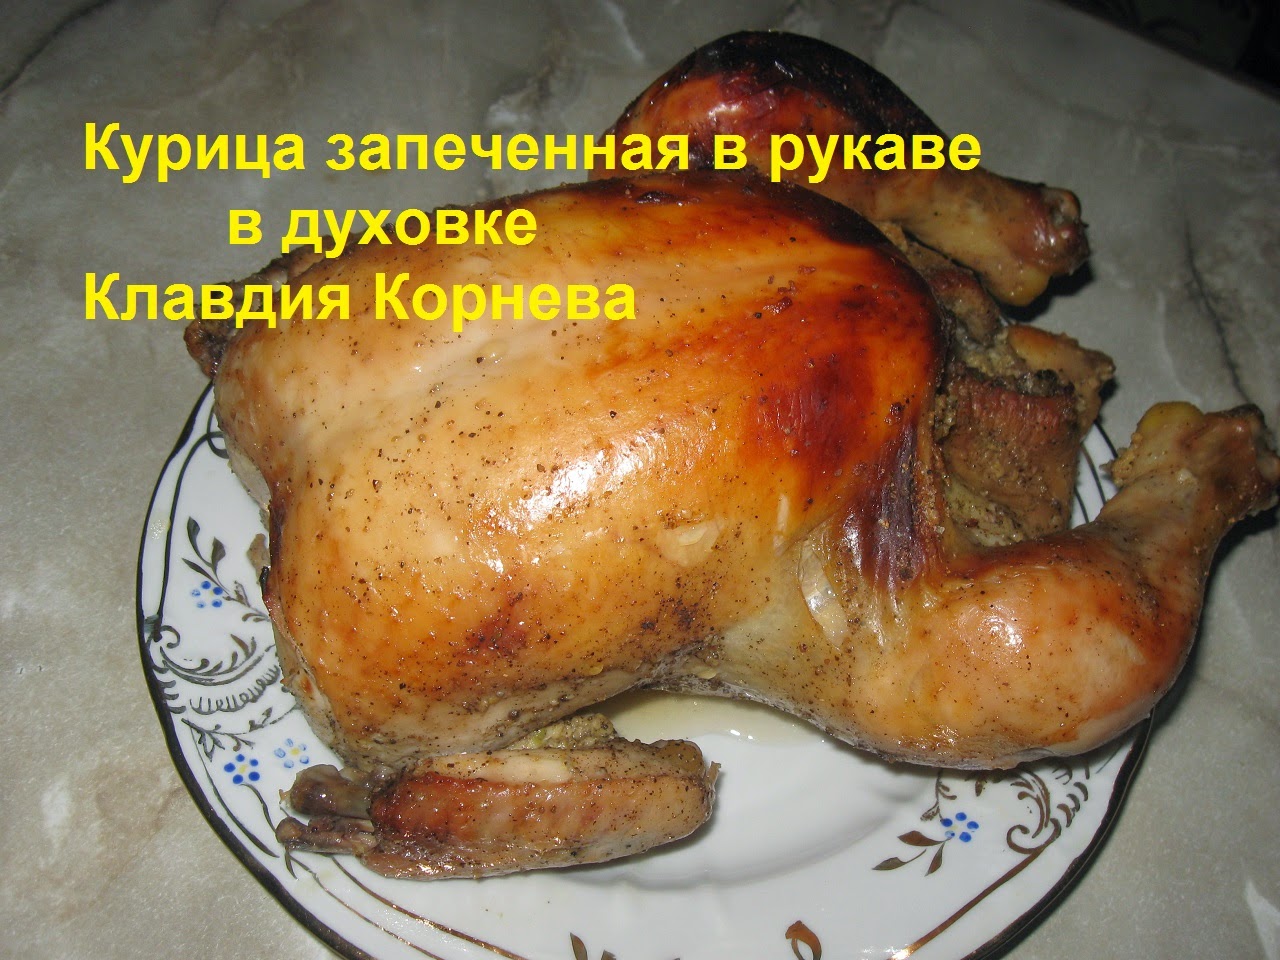 Цыпленок в духовке сколько времени. Курица в рукаве в духовке. Запечь курицу в рукаве. Запечь курицу в рукаве целиком.